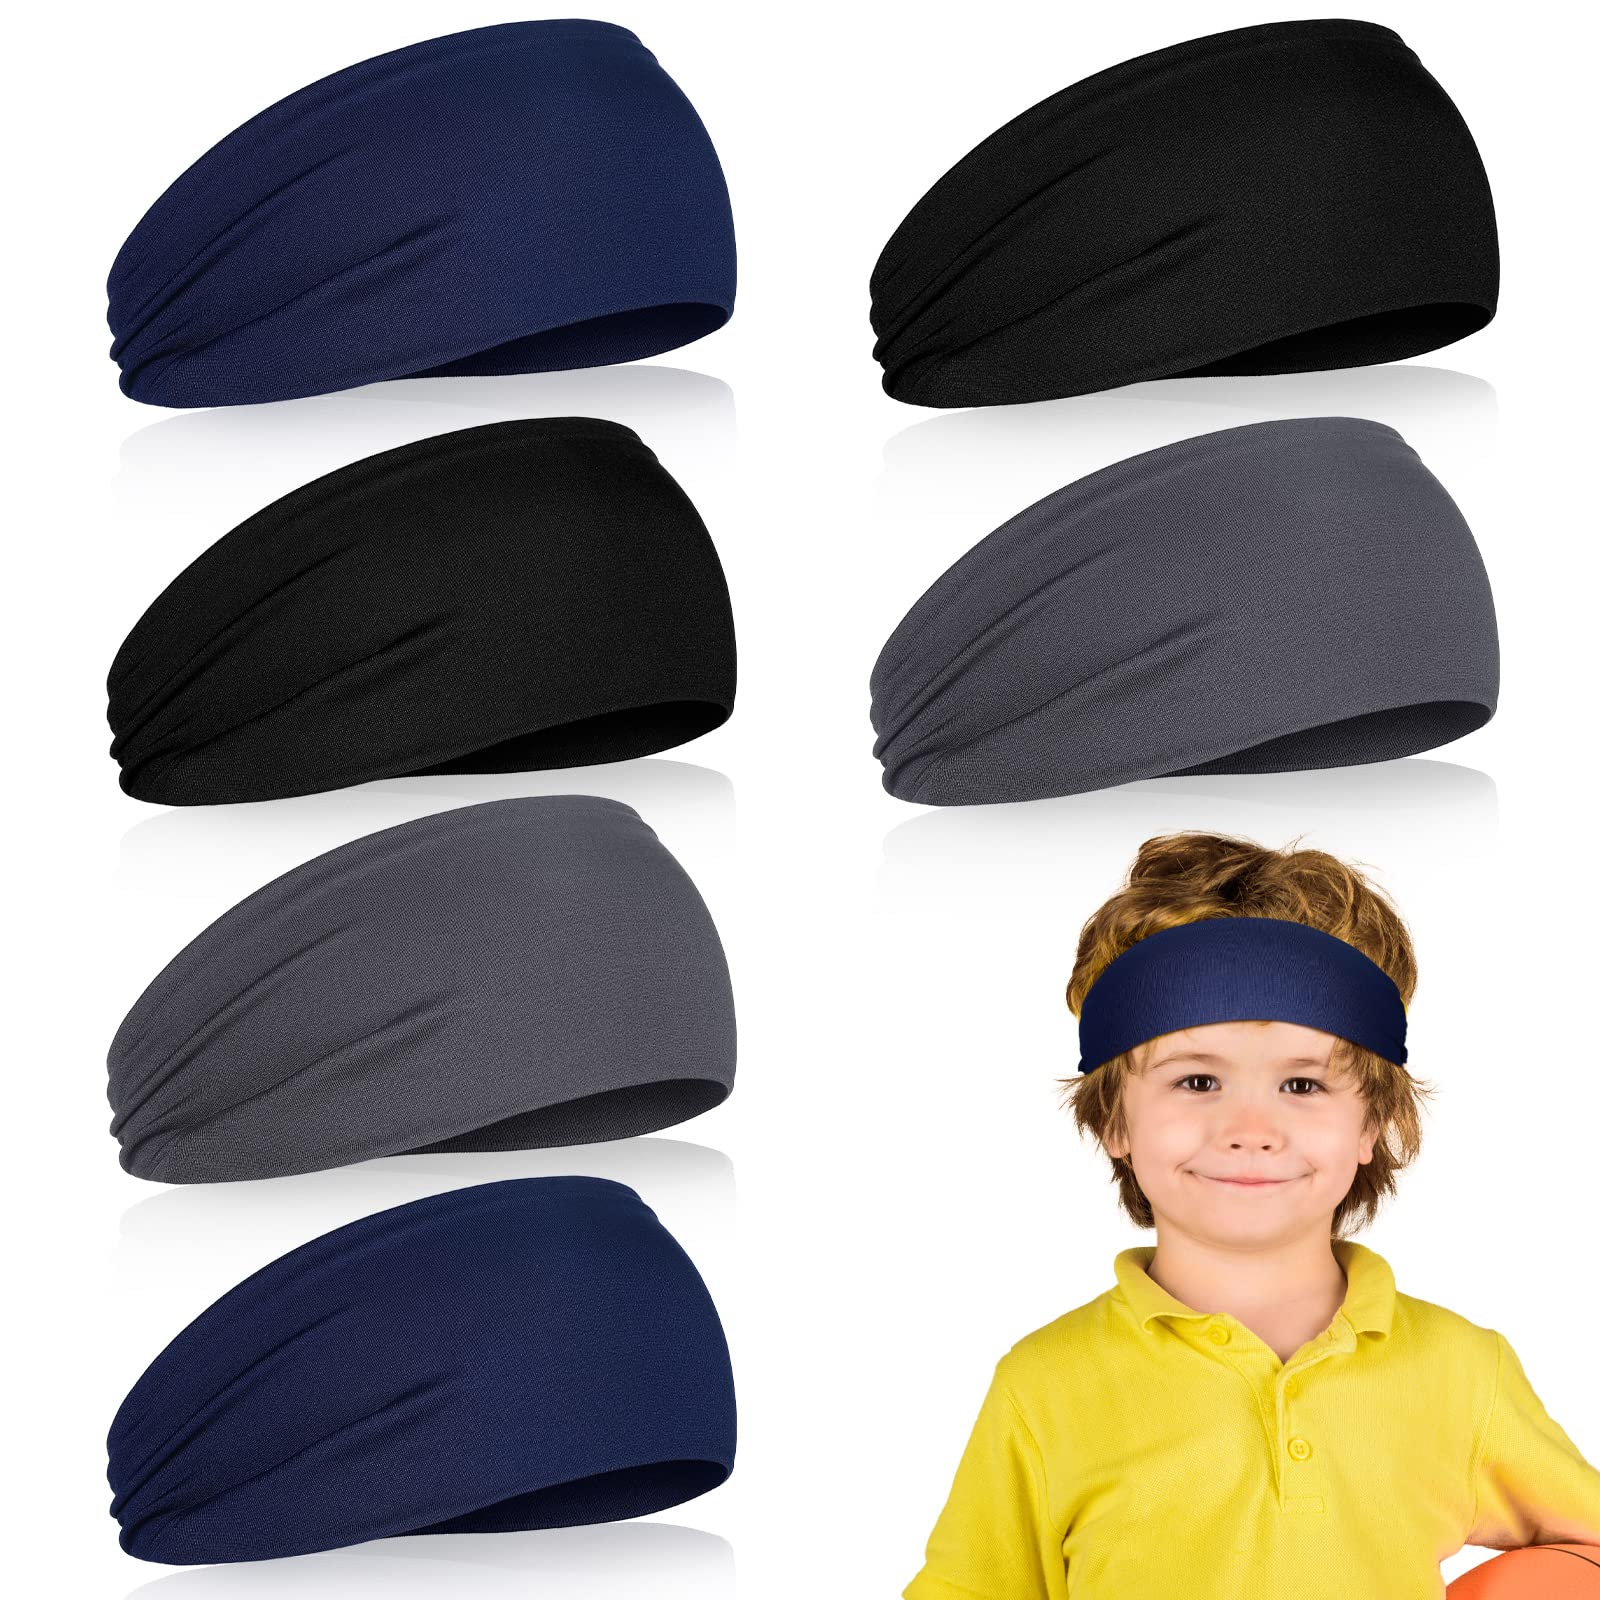 6 Pcs Kids Boys Headbands Athletic Sweatbands Boys Headbands for Kids  Children Headbands Football Headband Youth